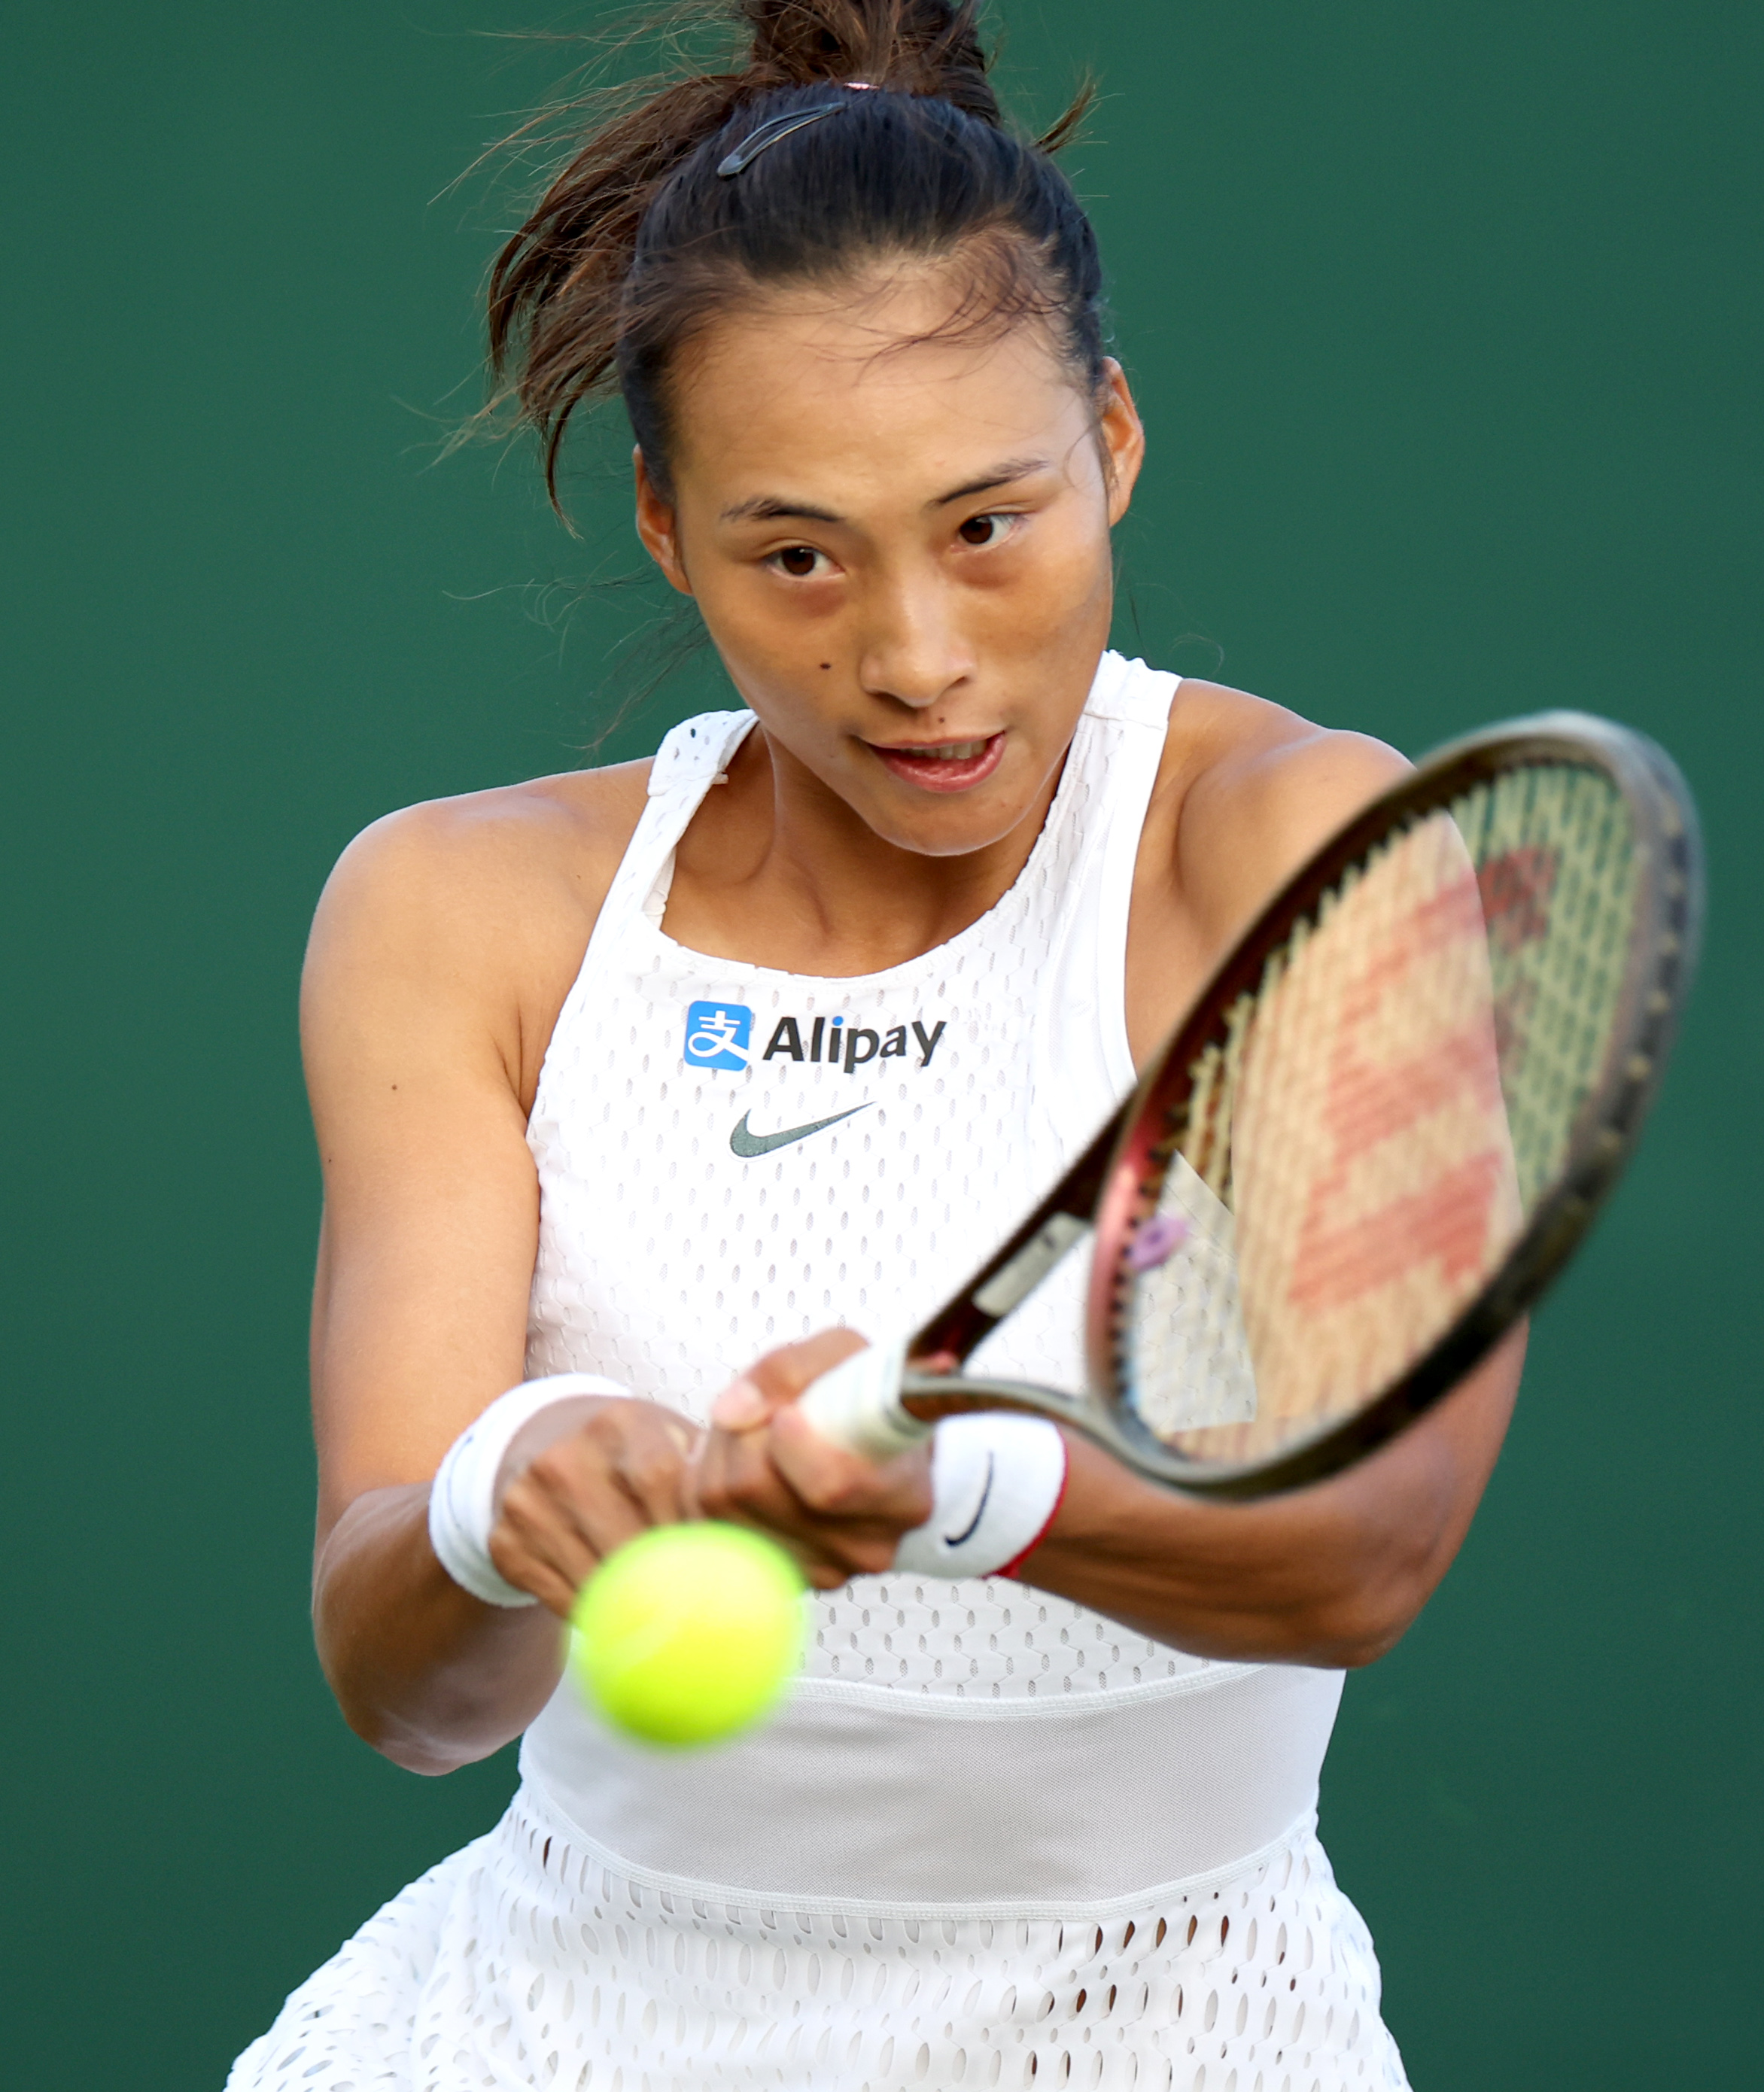 中国选手郑钦文淘汰前美网冠军 首次晋级WTA1000赛八强 - 封面新闻